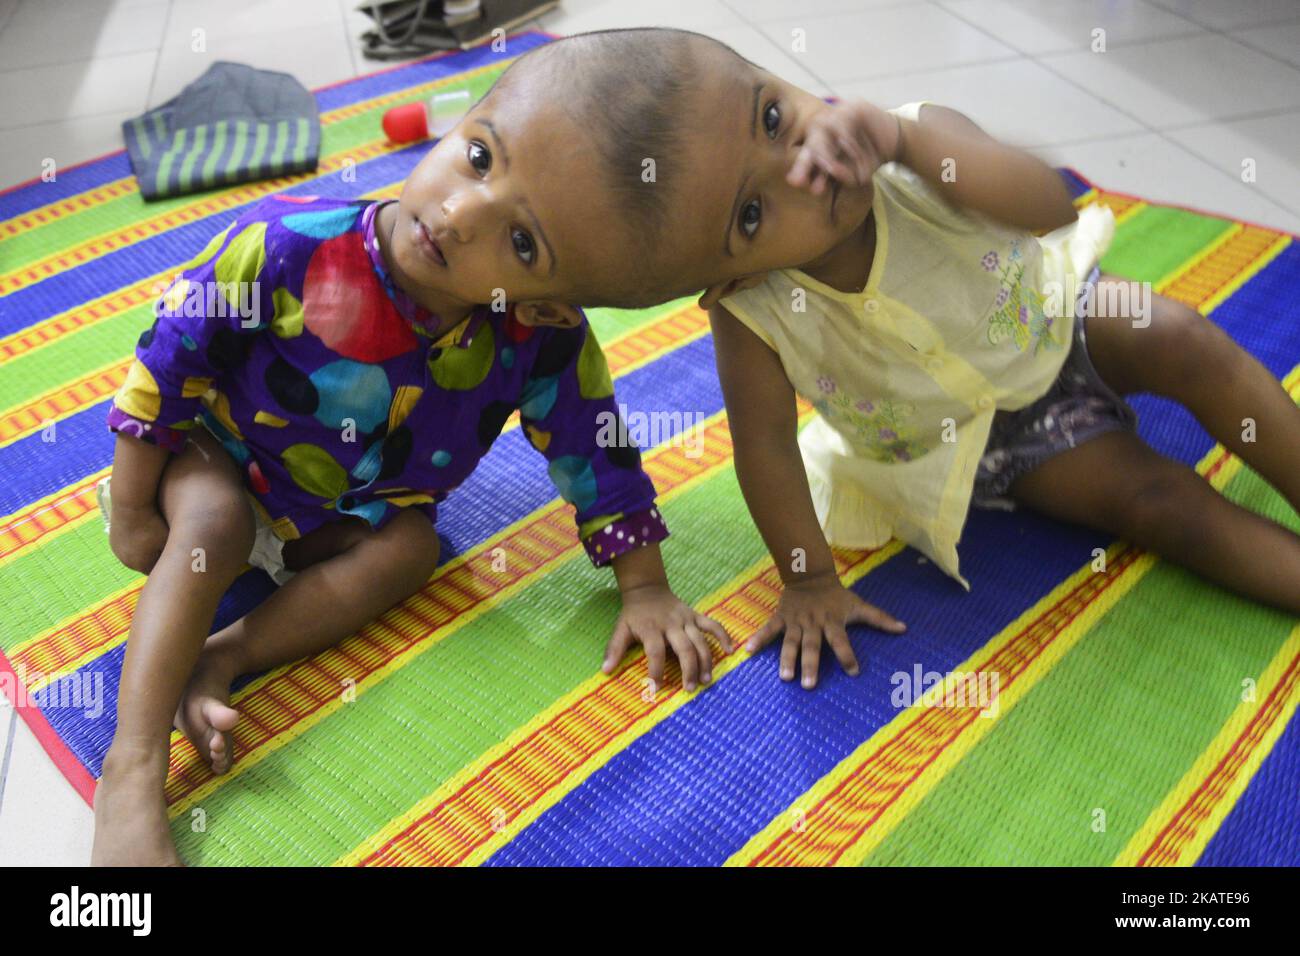 Le ragazze gemelle riunite Rabeya Islam e Rokeya Islam suonano presso un Dacca Medical Collage Hospital a Dhaka, Bangladesh il 21 novembre 2017. Taslima Khatun, insegnante di scuola, ha dato alla luce i gemelli a testa riunita il 16 luglio 2016 dopo un cesareo. I gemelli sono stati ammessi in un ospedale di Dacca Medical Collage per l'esame prima di un intervento chirurgico potenziale per separare le loro teste. (Foto di Mamunur Rashid/NurPhoto) Foto Stock